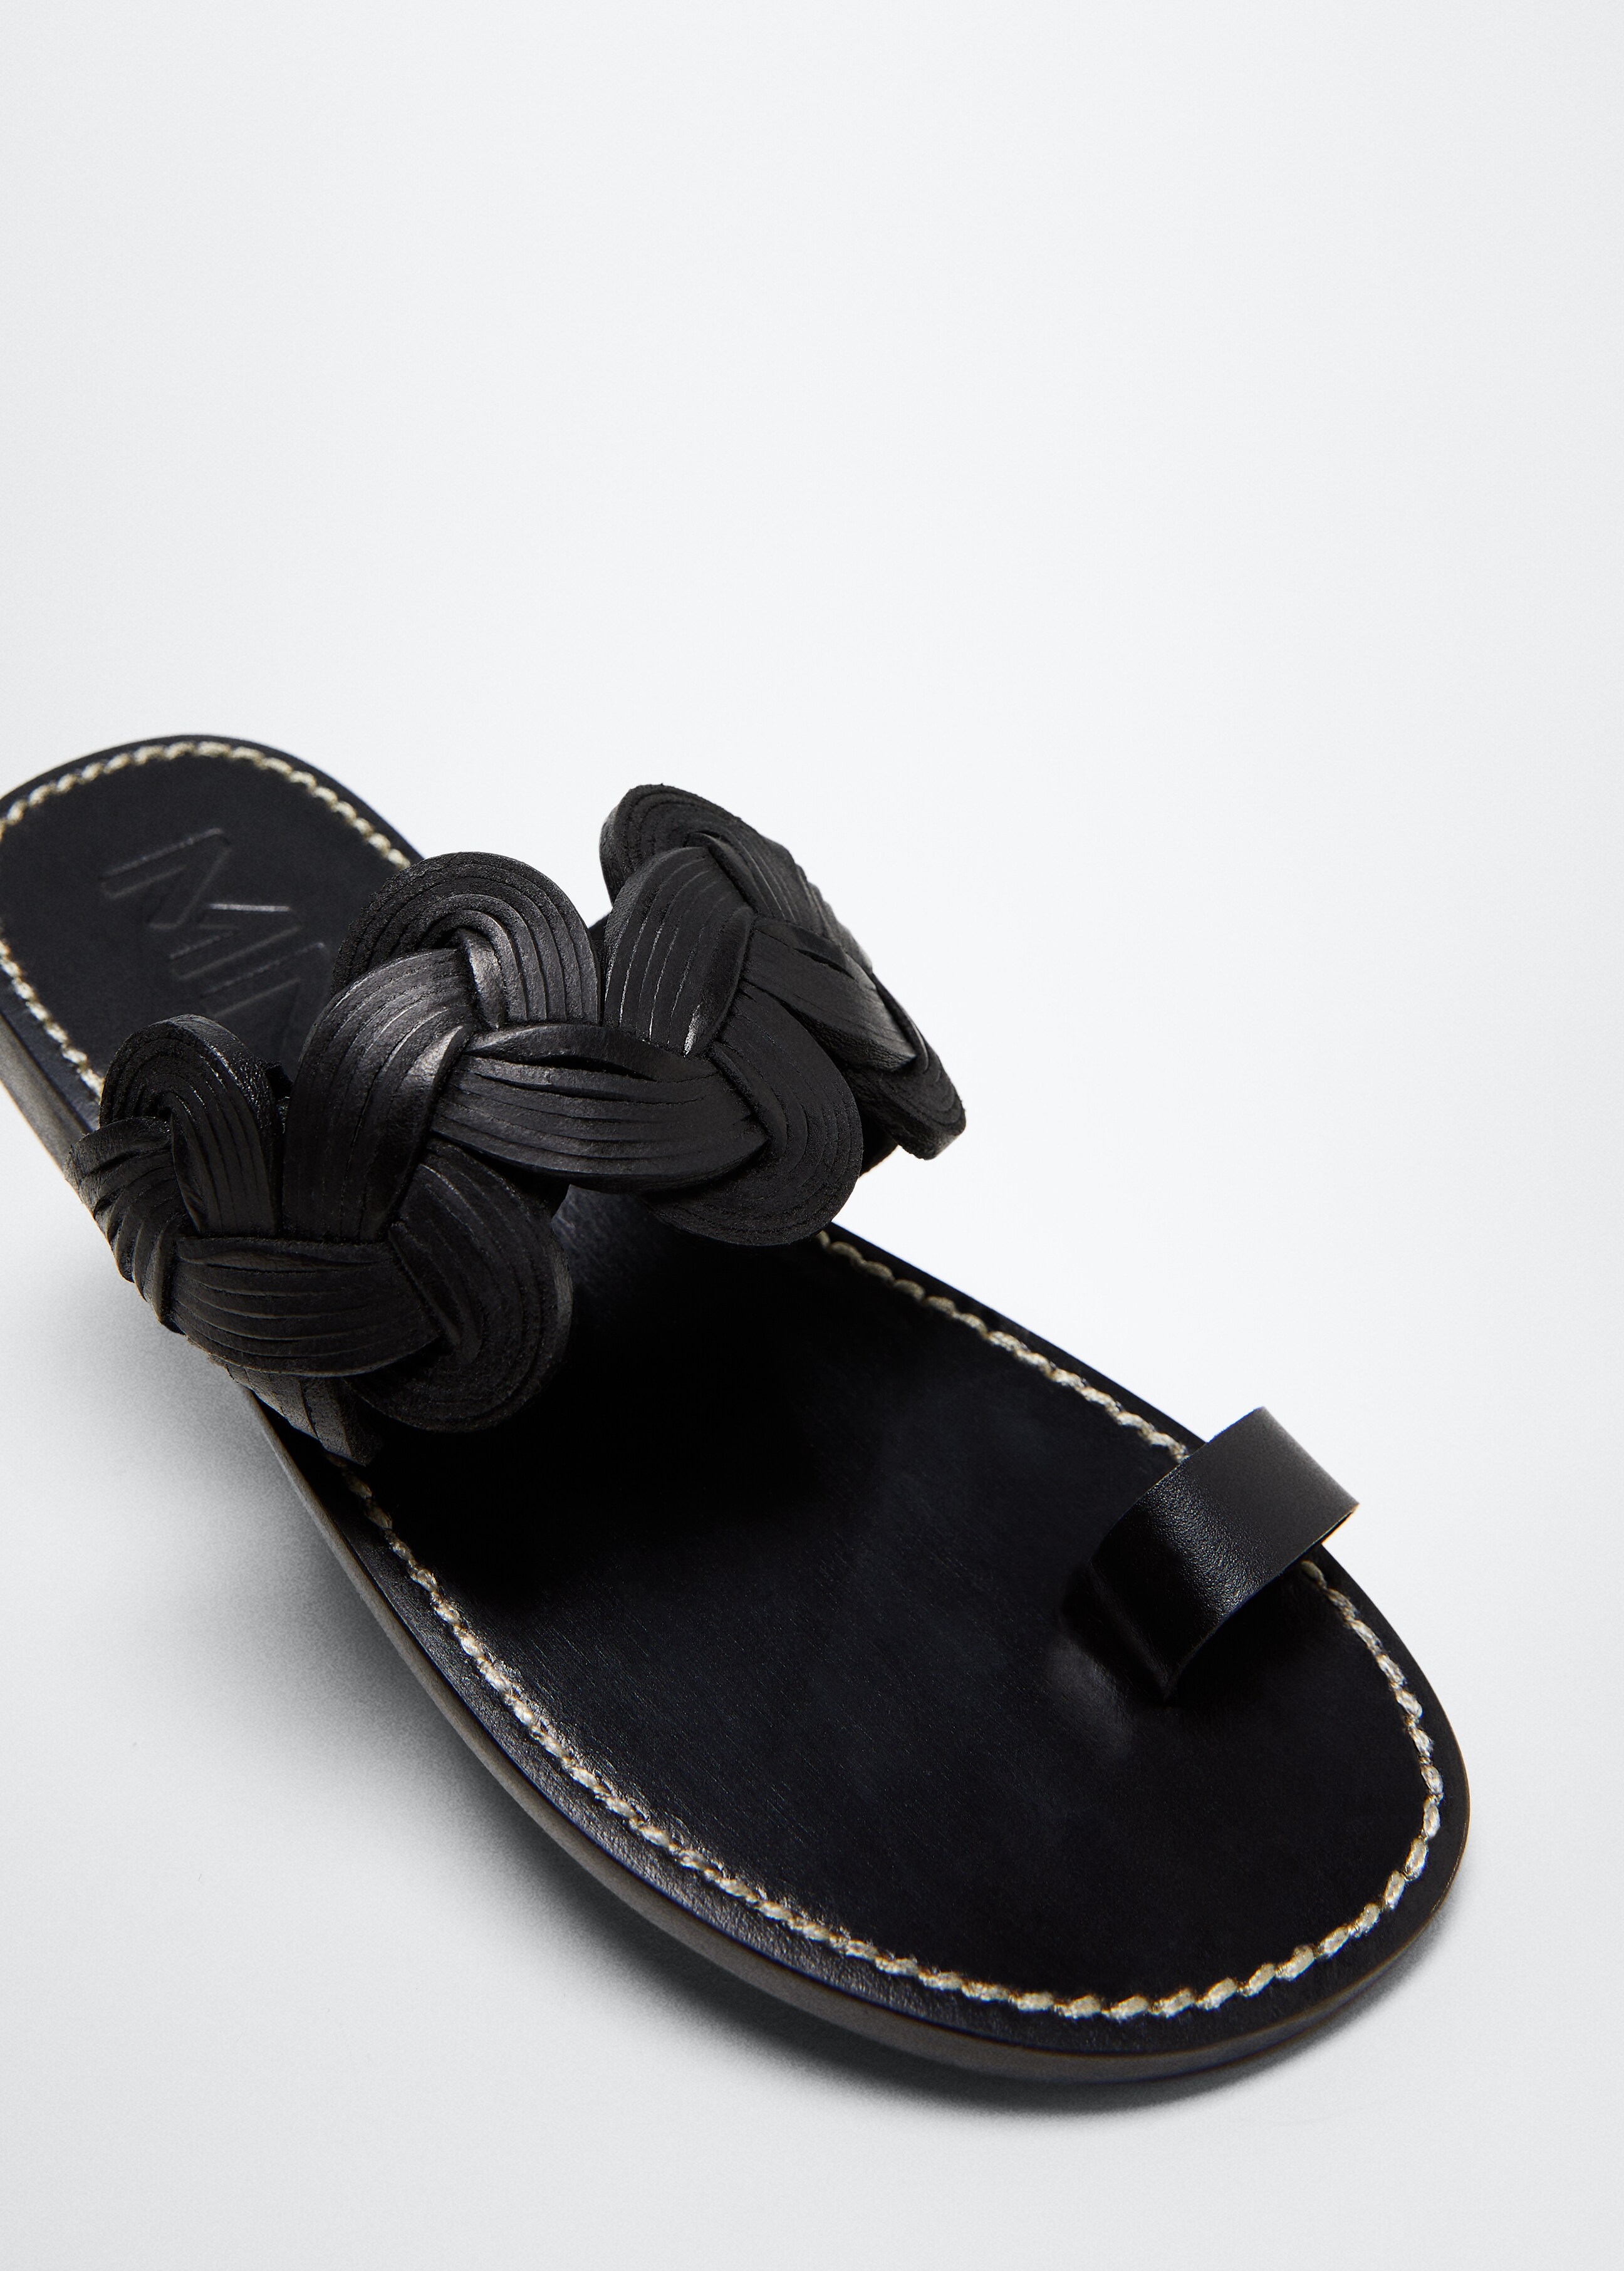 Sandales tressées cuir - Plan moyen